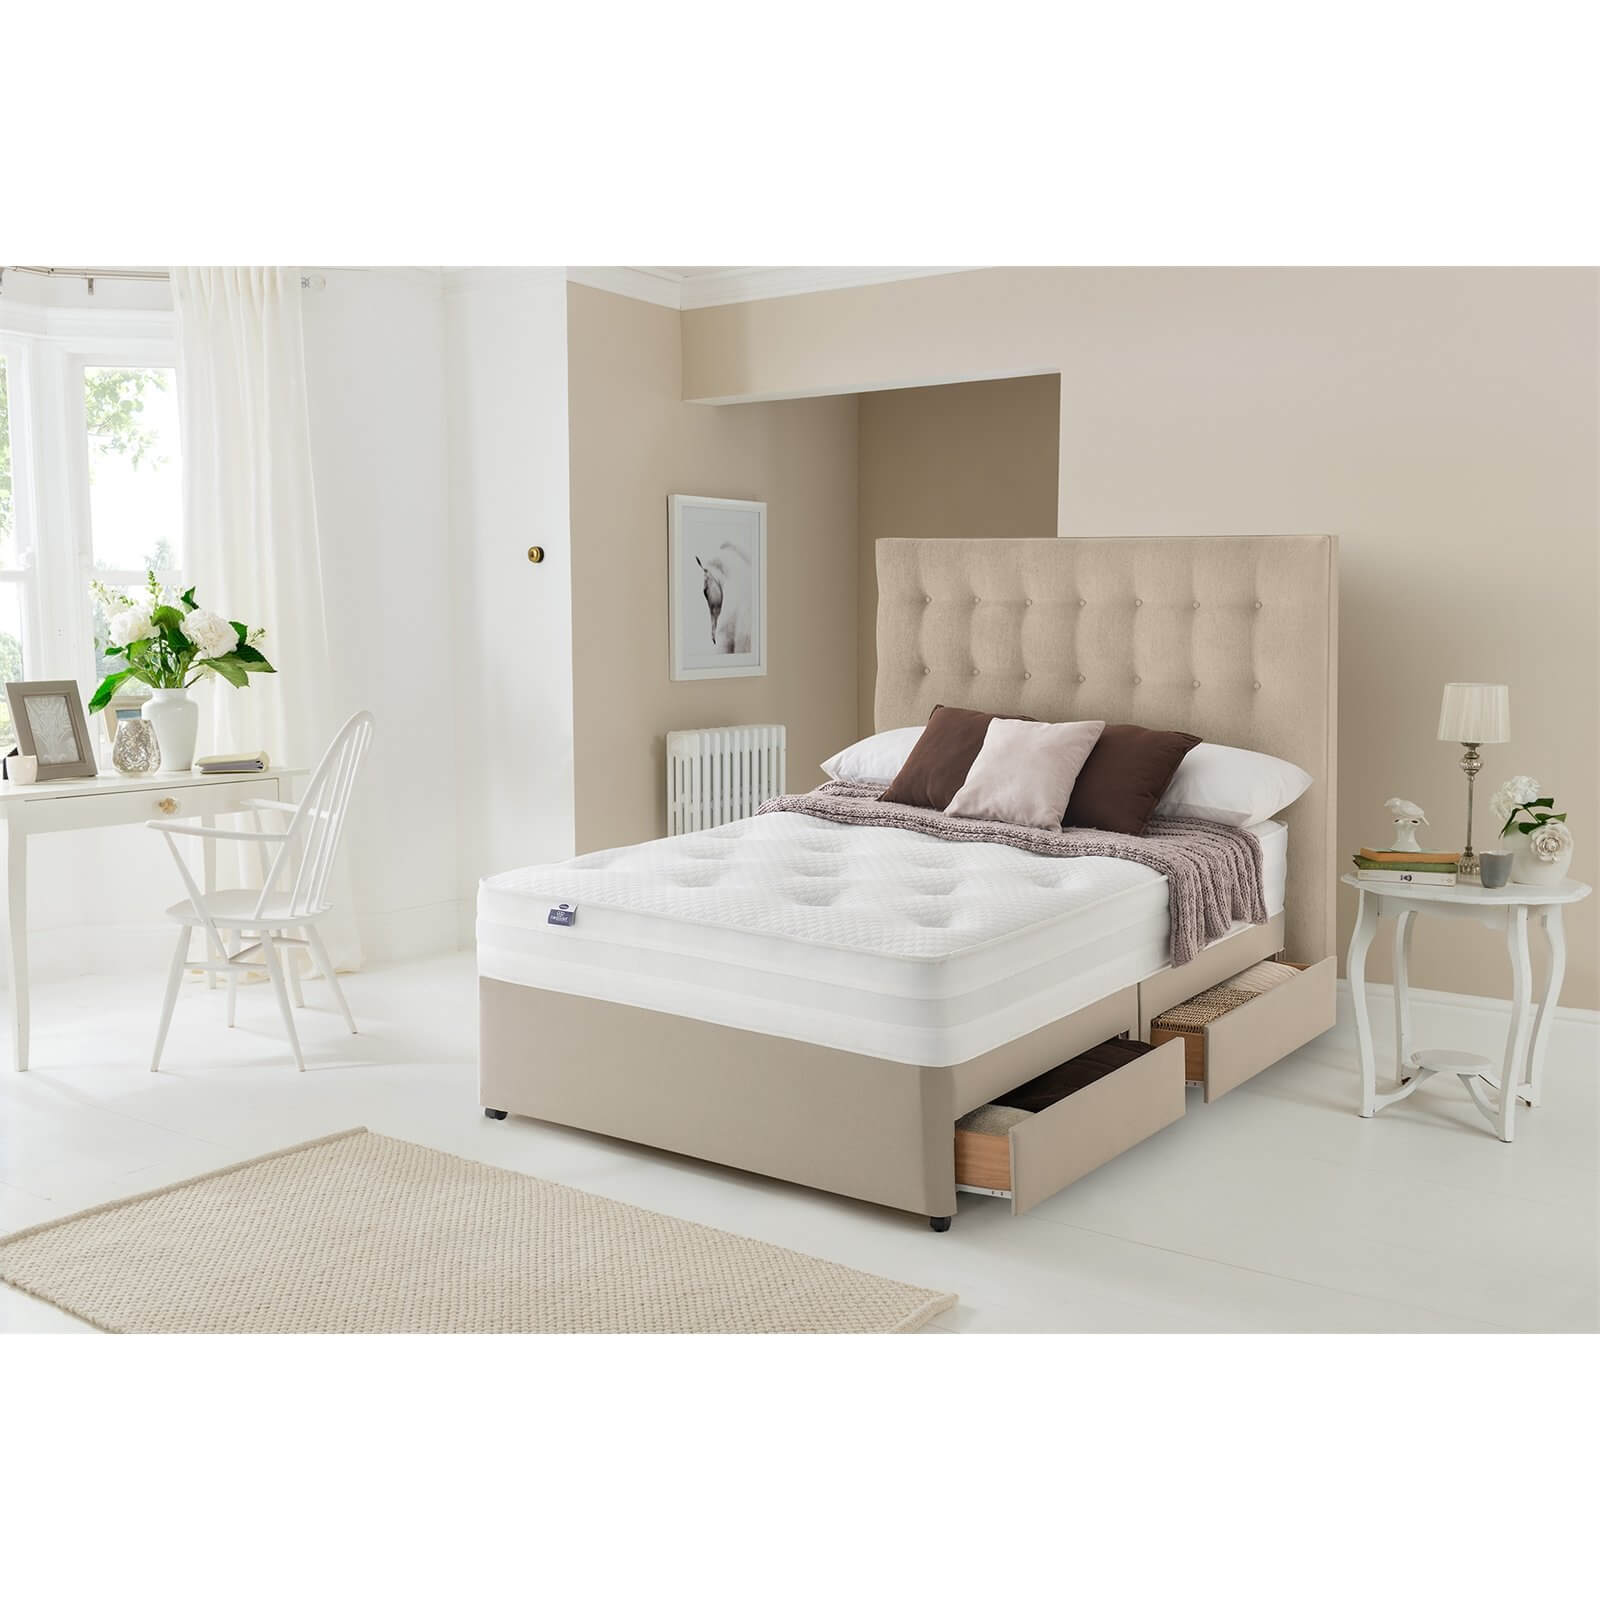 Silentnight Eco Comfort 1200 Pocket Divan Bed 4 Drawer - Sandstone - King